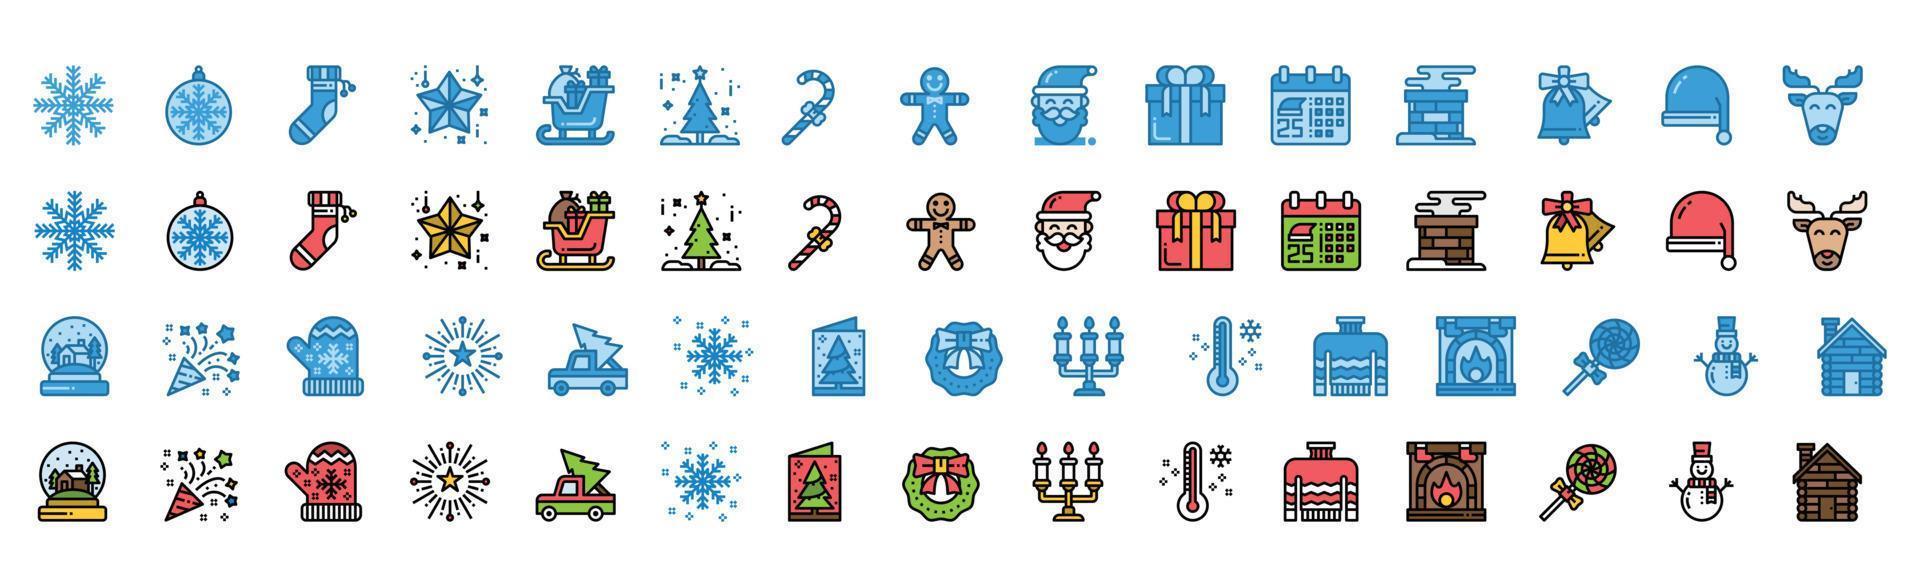 jul ikoner uppsättning. vektor illustration, snögubbe, Semester, tomte, vinter-